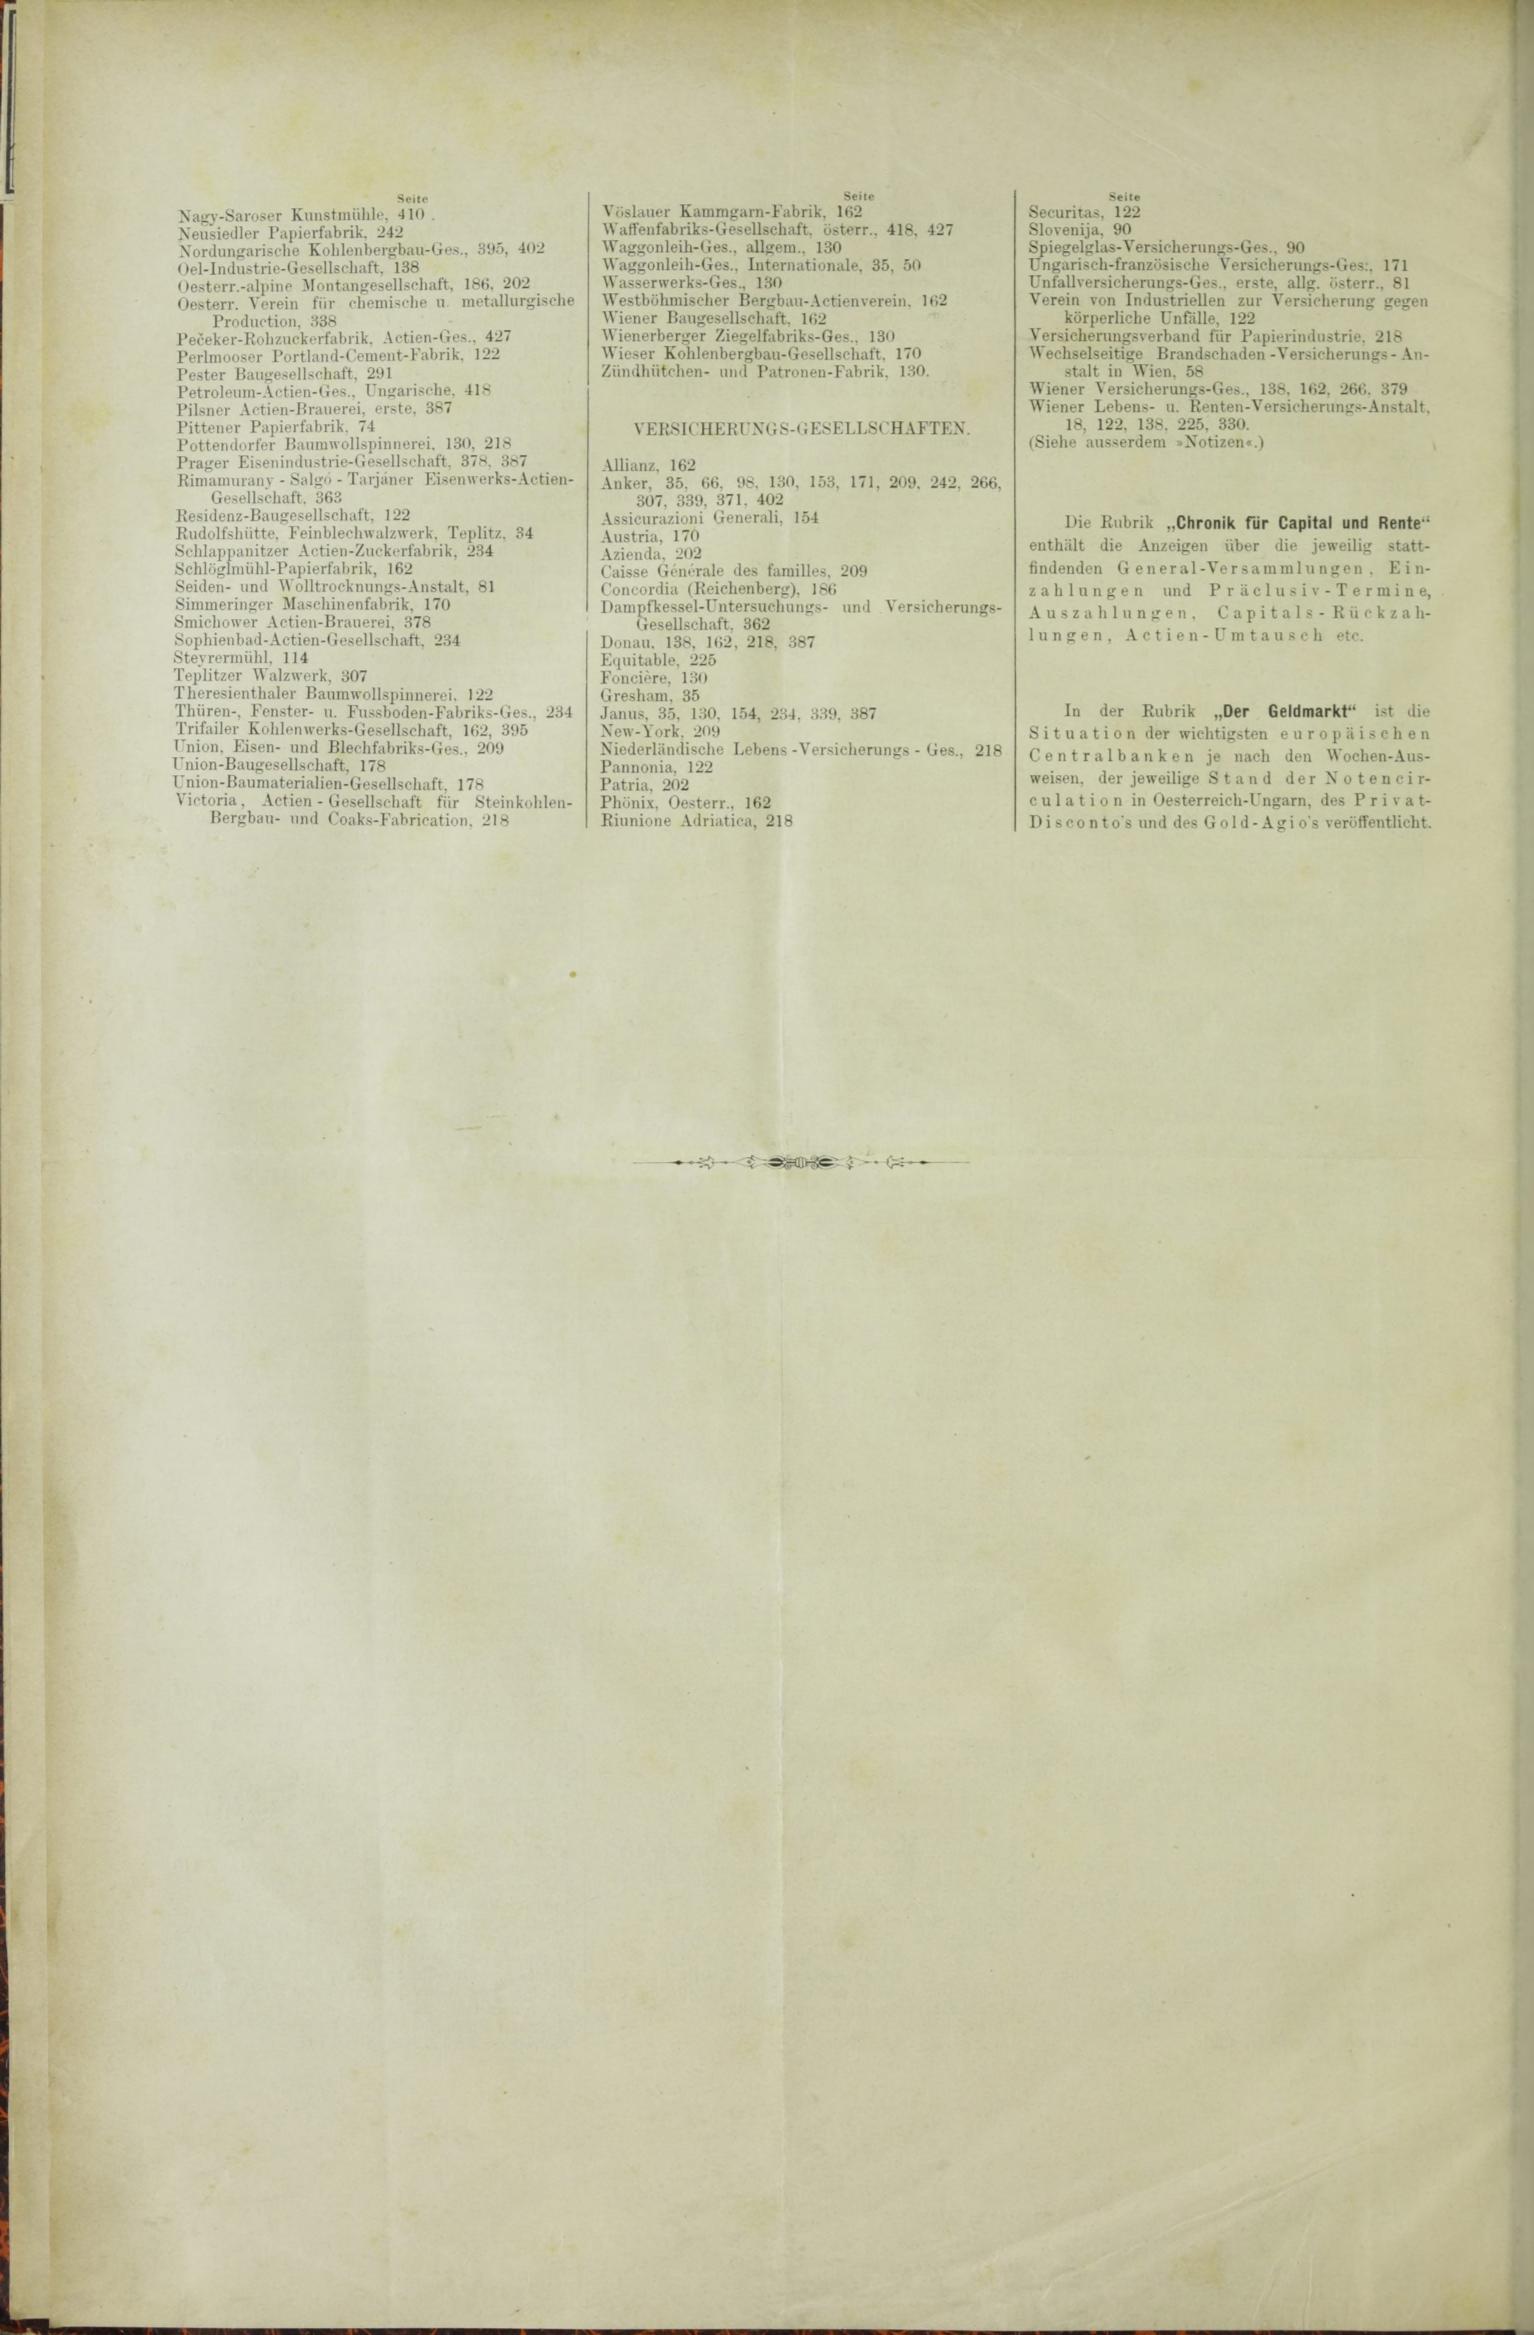 Der Tresor 05.02.1885 - Seite 12